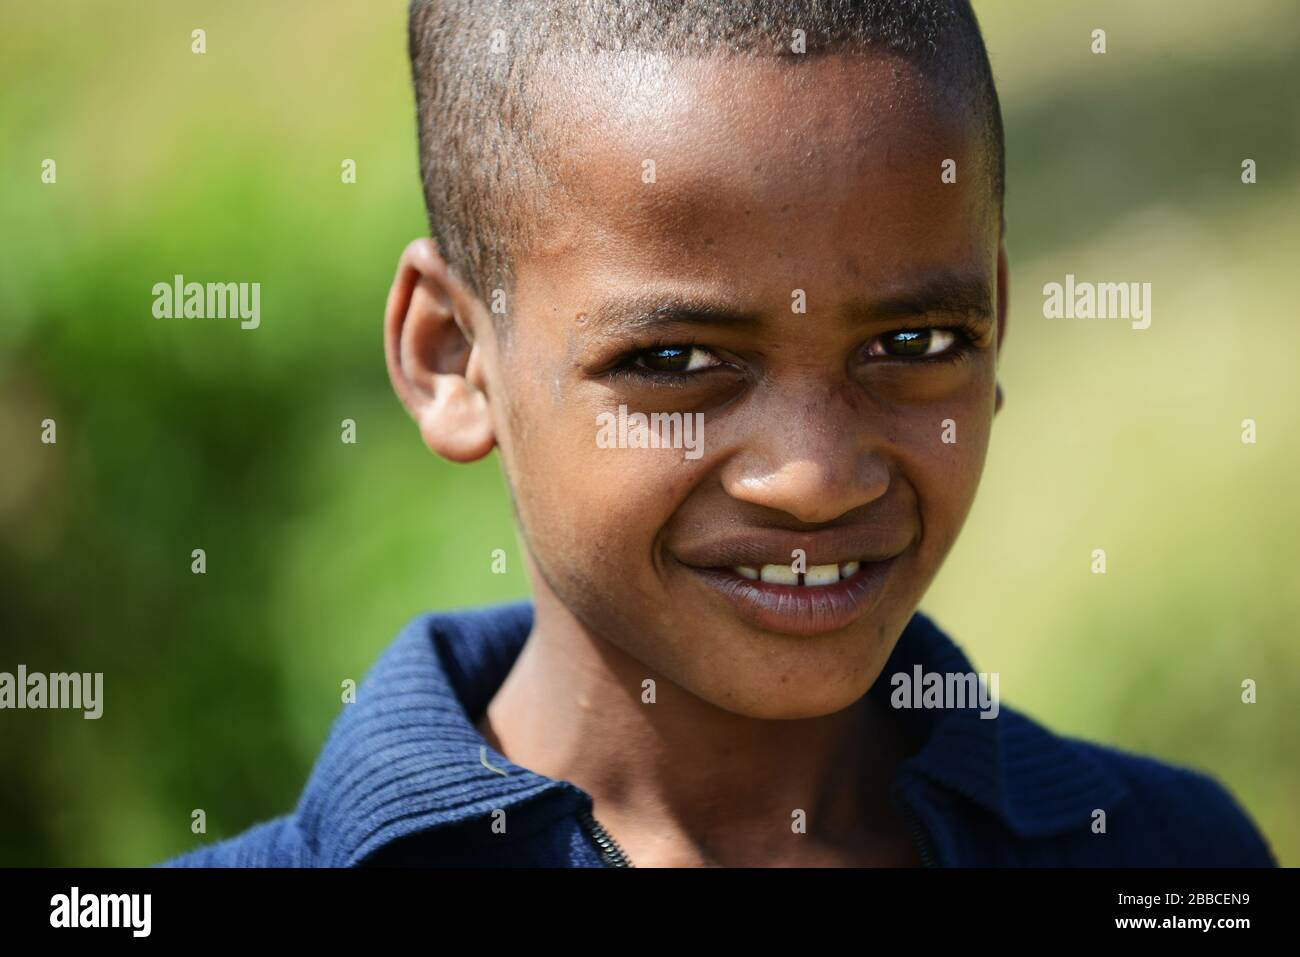 Retrato de un niño etíope. Foto de stock